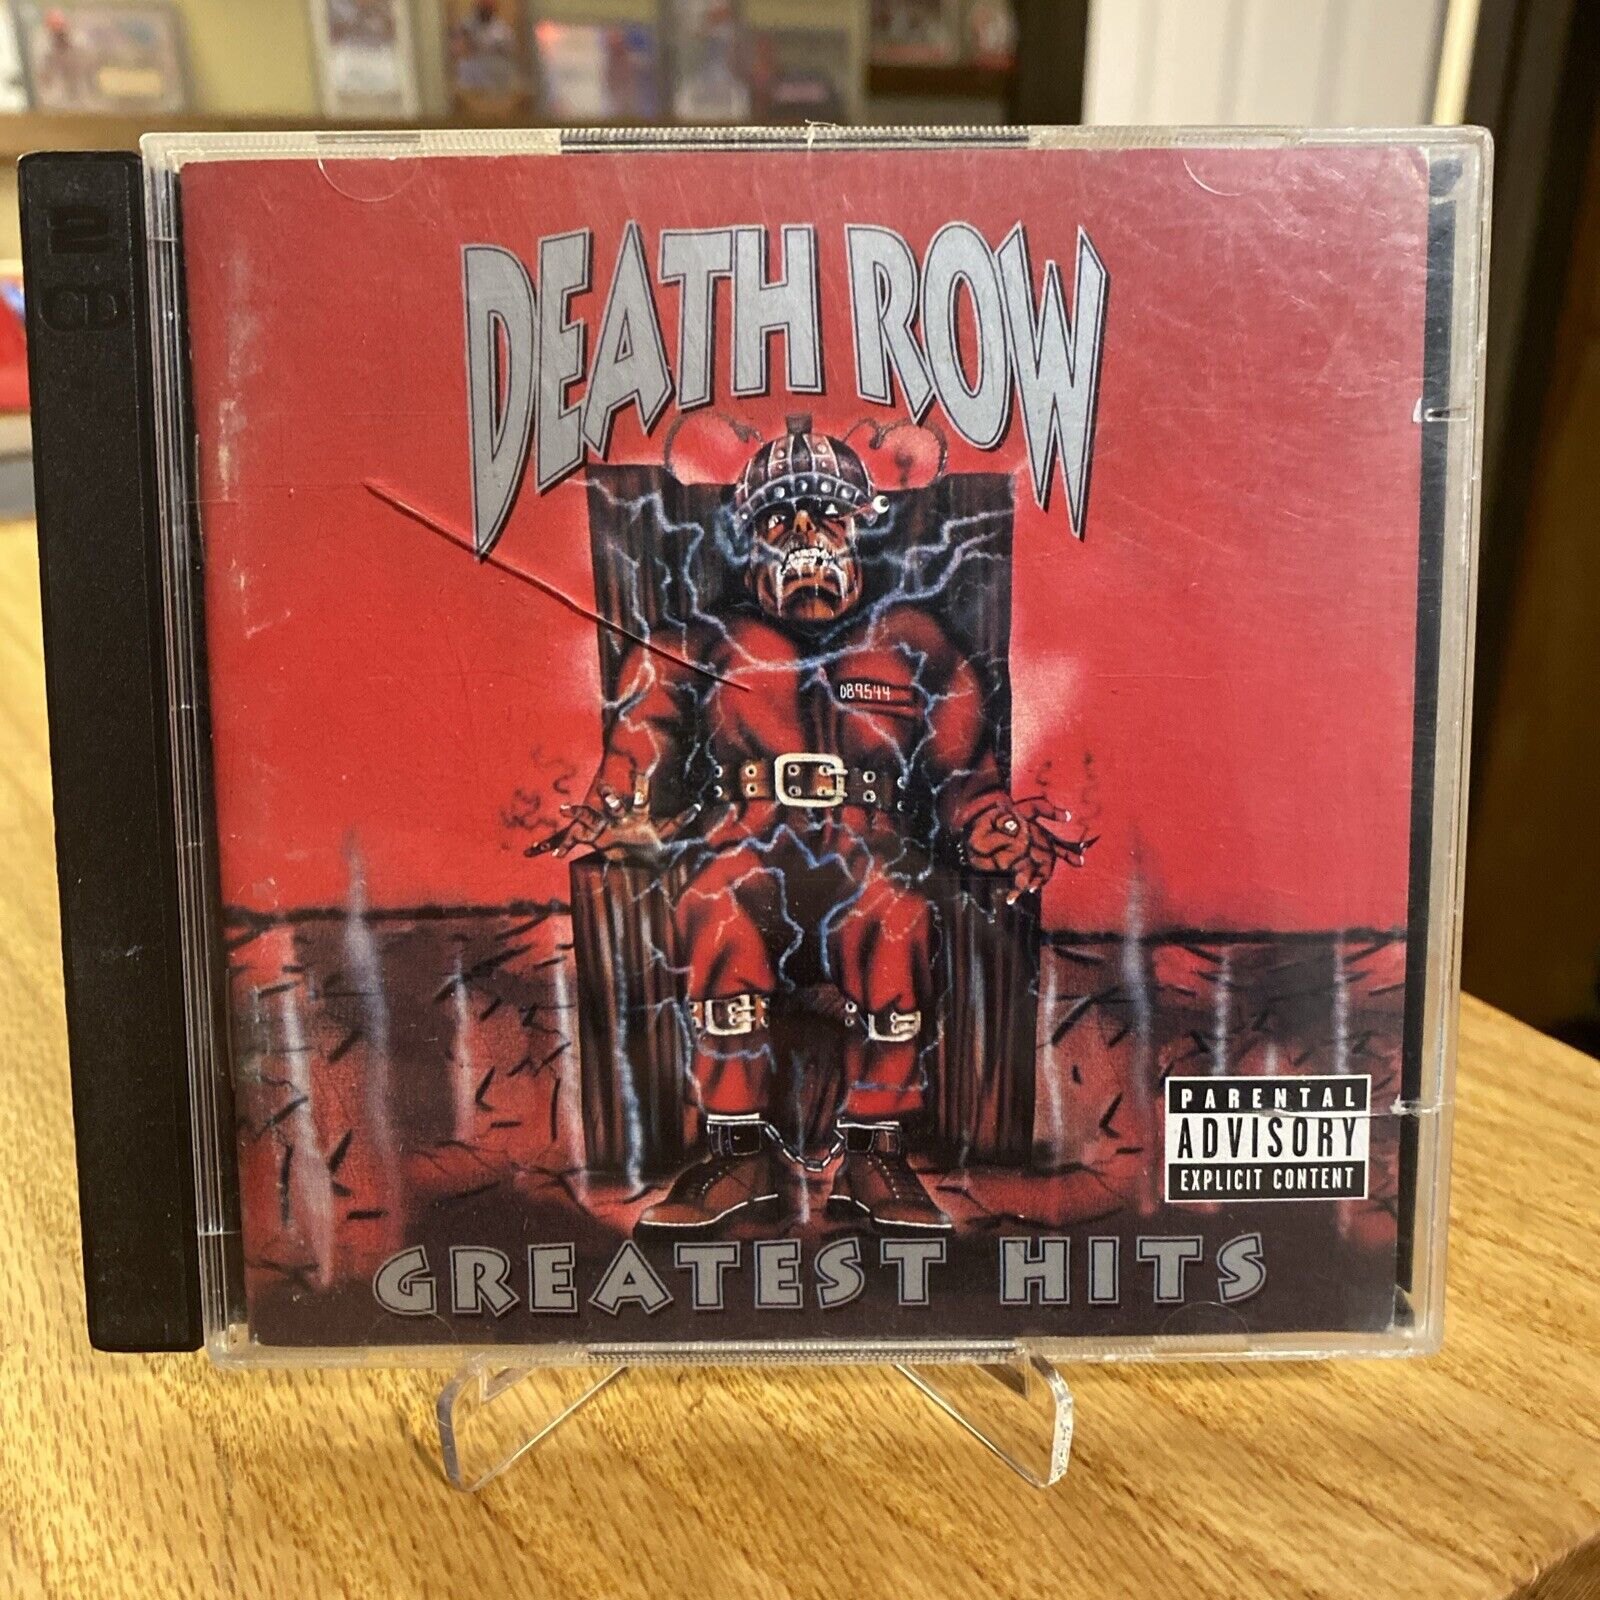 Death Row Greatest Hits Audio CD